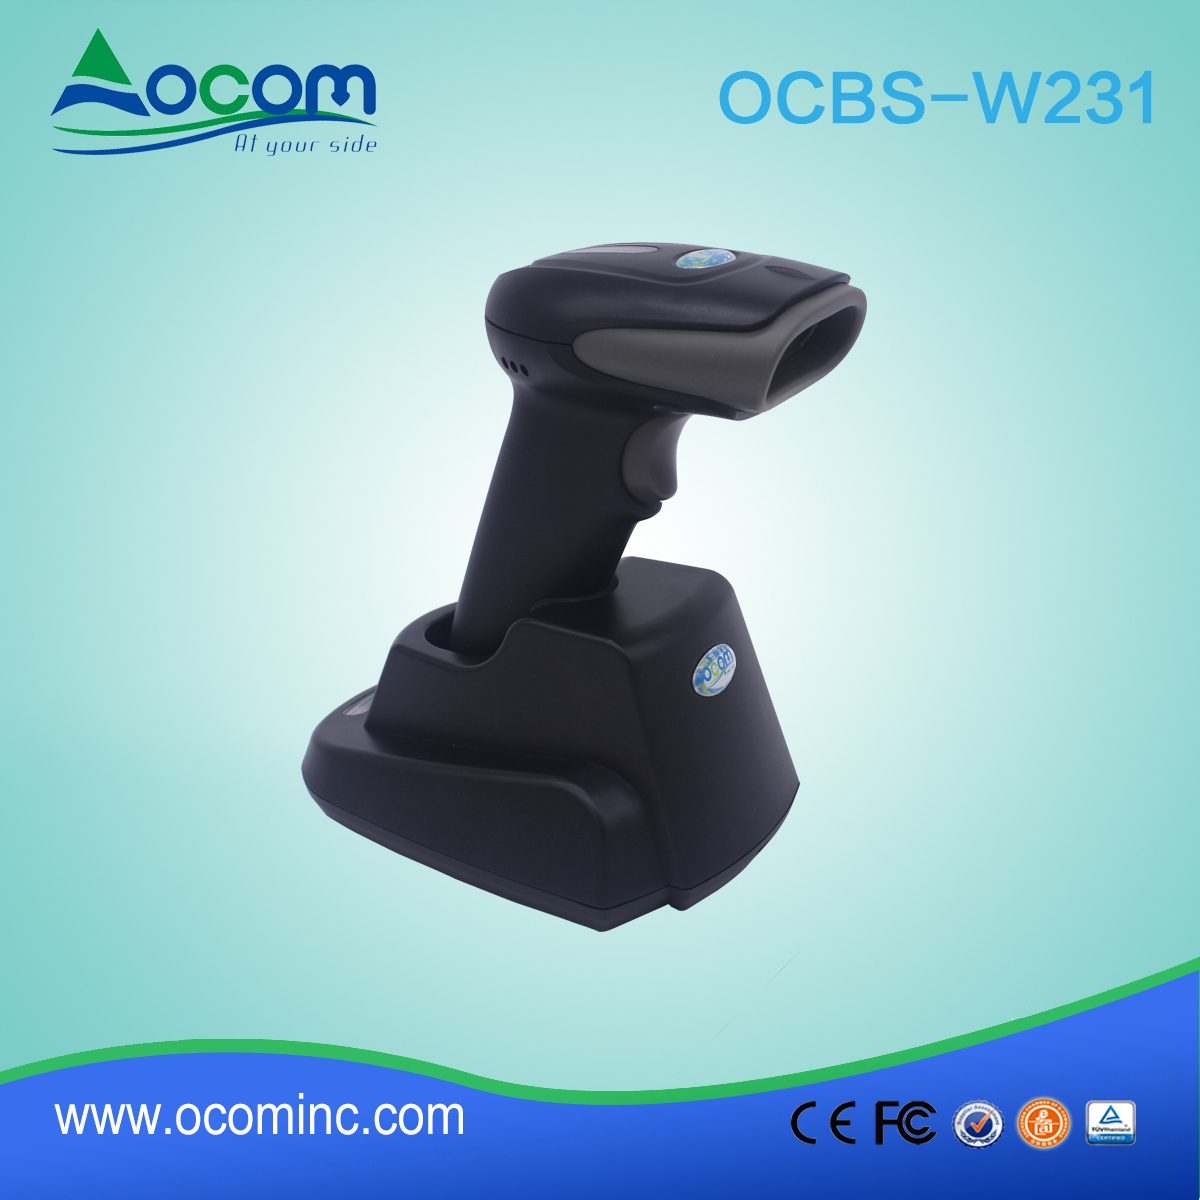 OCBS-W231Wireless freqüência USB leitor de código de barras scanner com memória